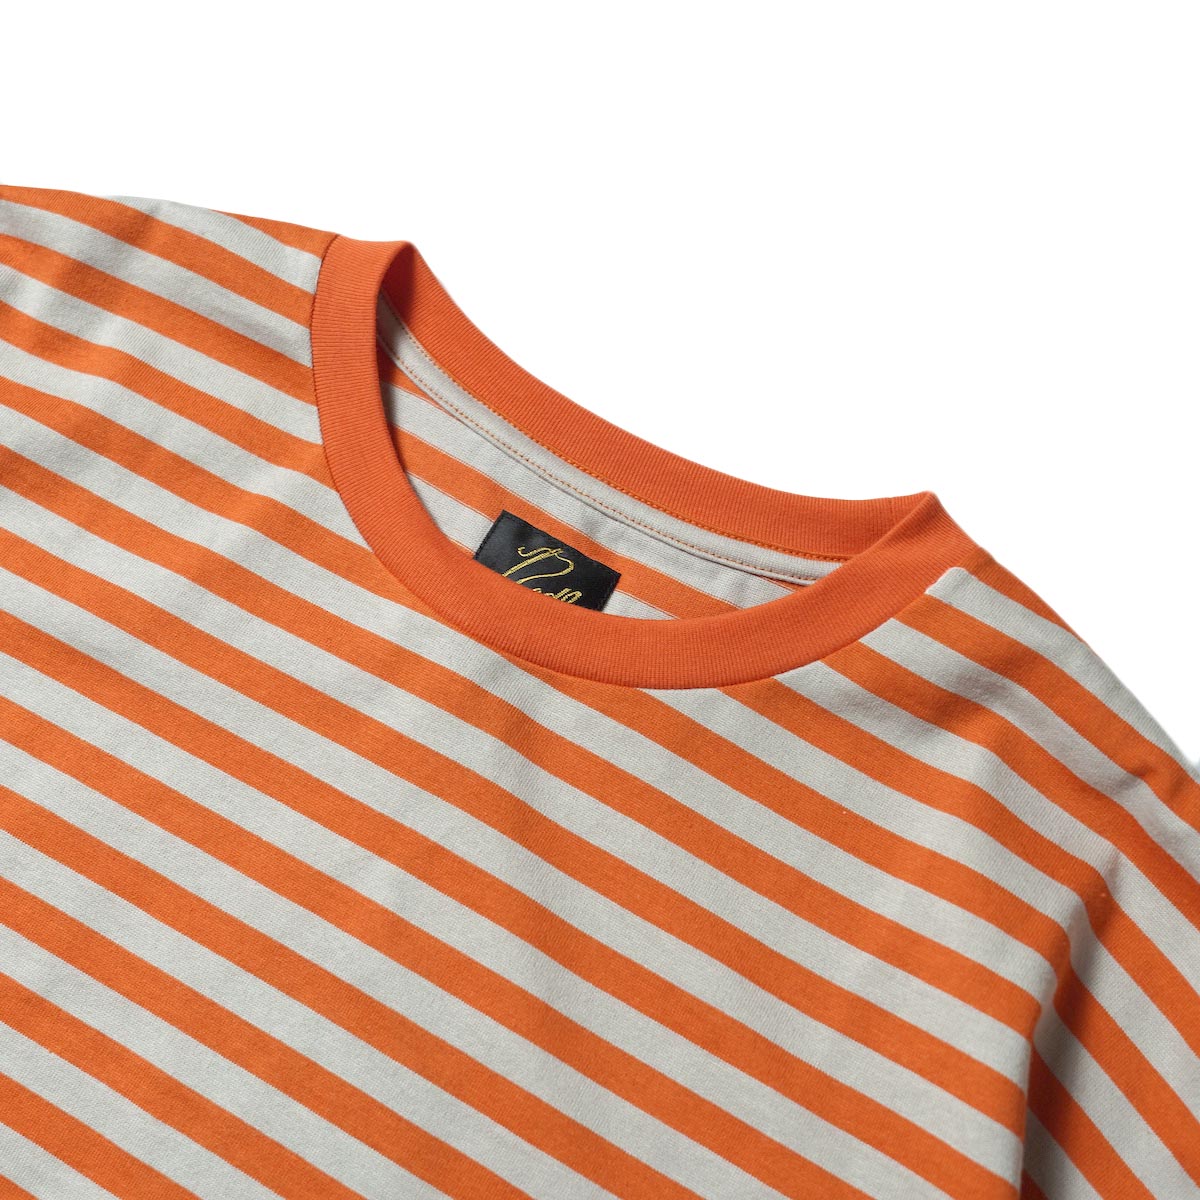 Needles / S/S Crew Neck Tee - Cotton Stripe Jersey (Orange/Beige)リブ